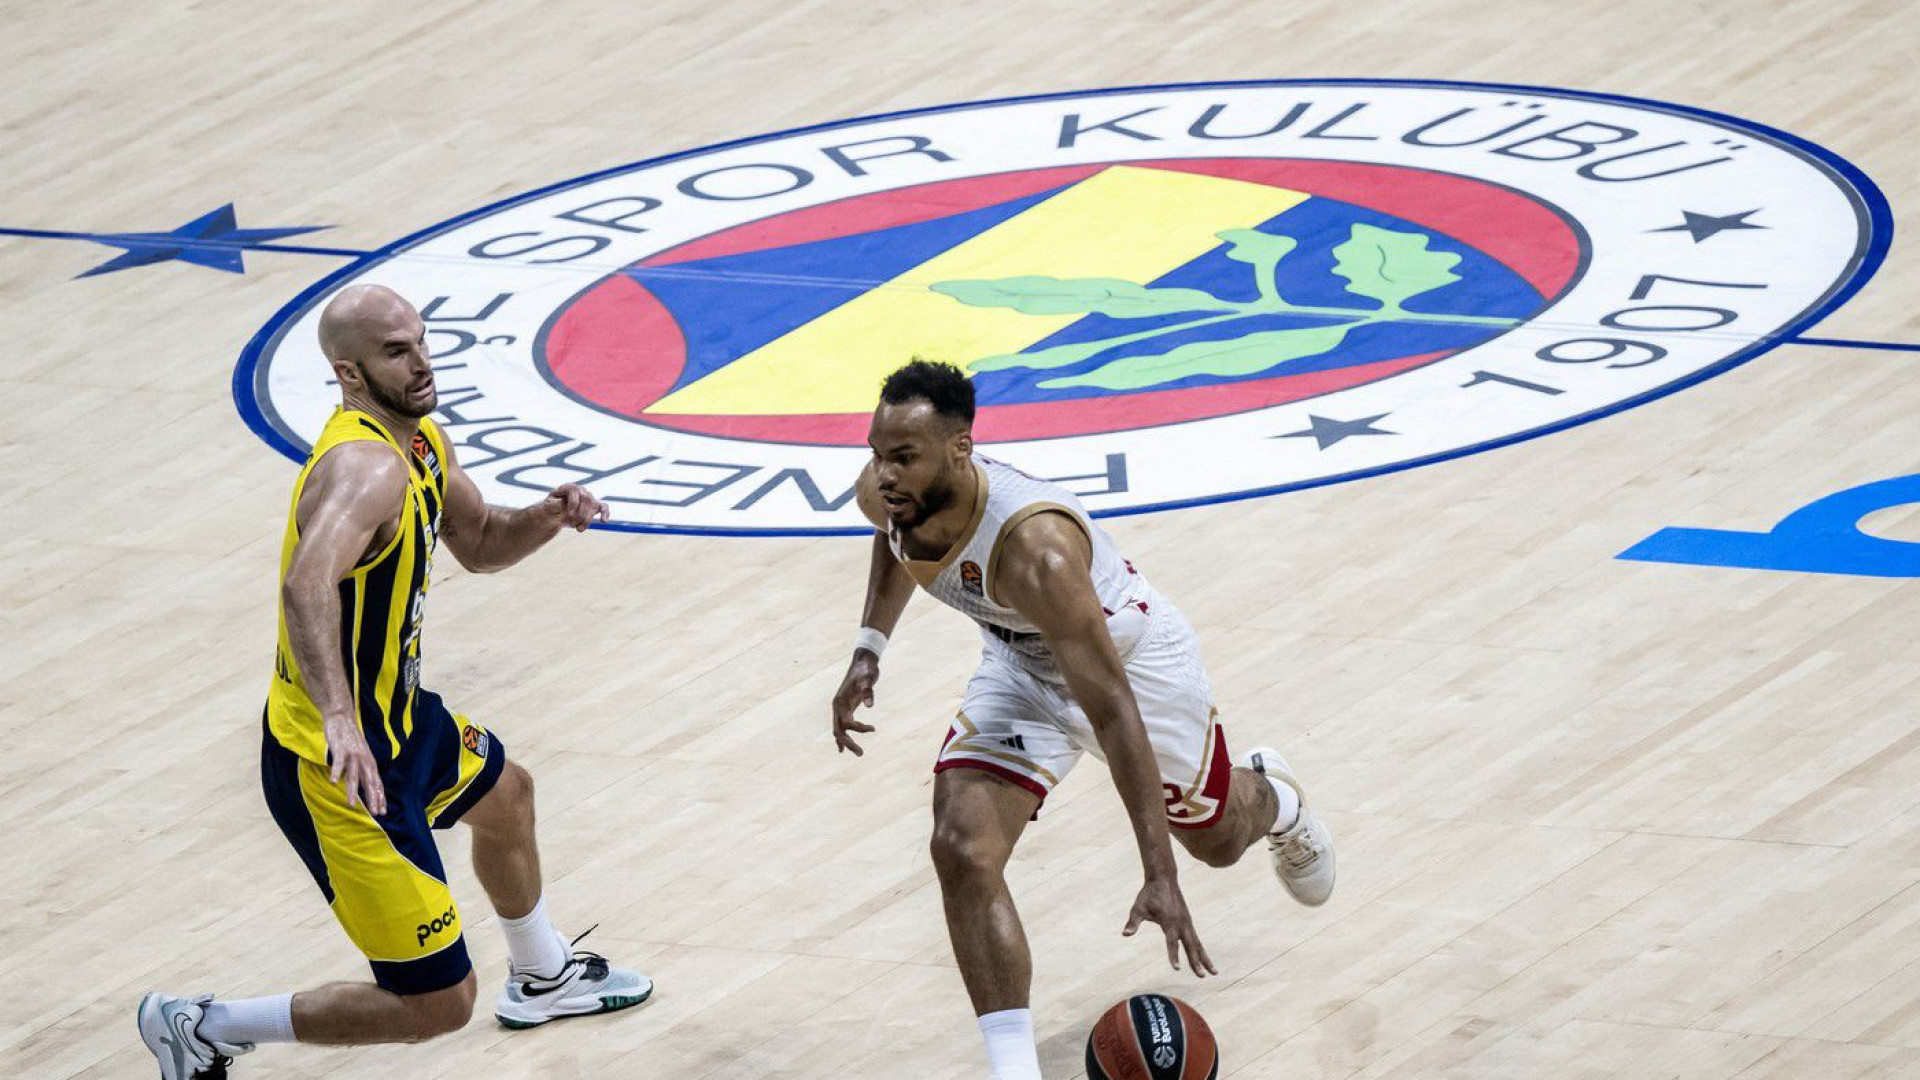  Nestvarna drama i anti-košarka u Istanbulu! Fener pao u poslednjim sekundama, Monako izborio majstoricu! - http://sportal.rs